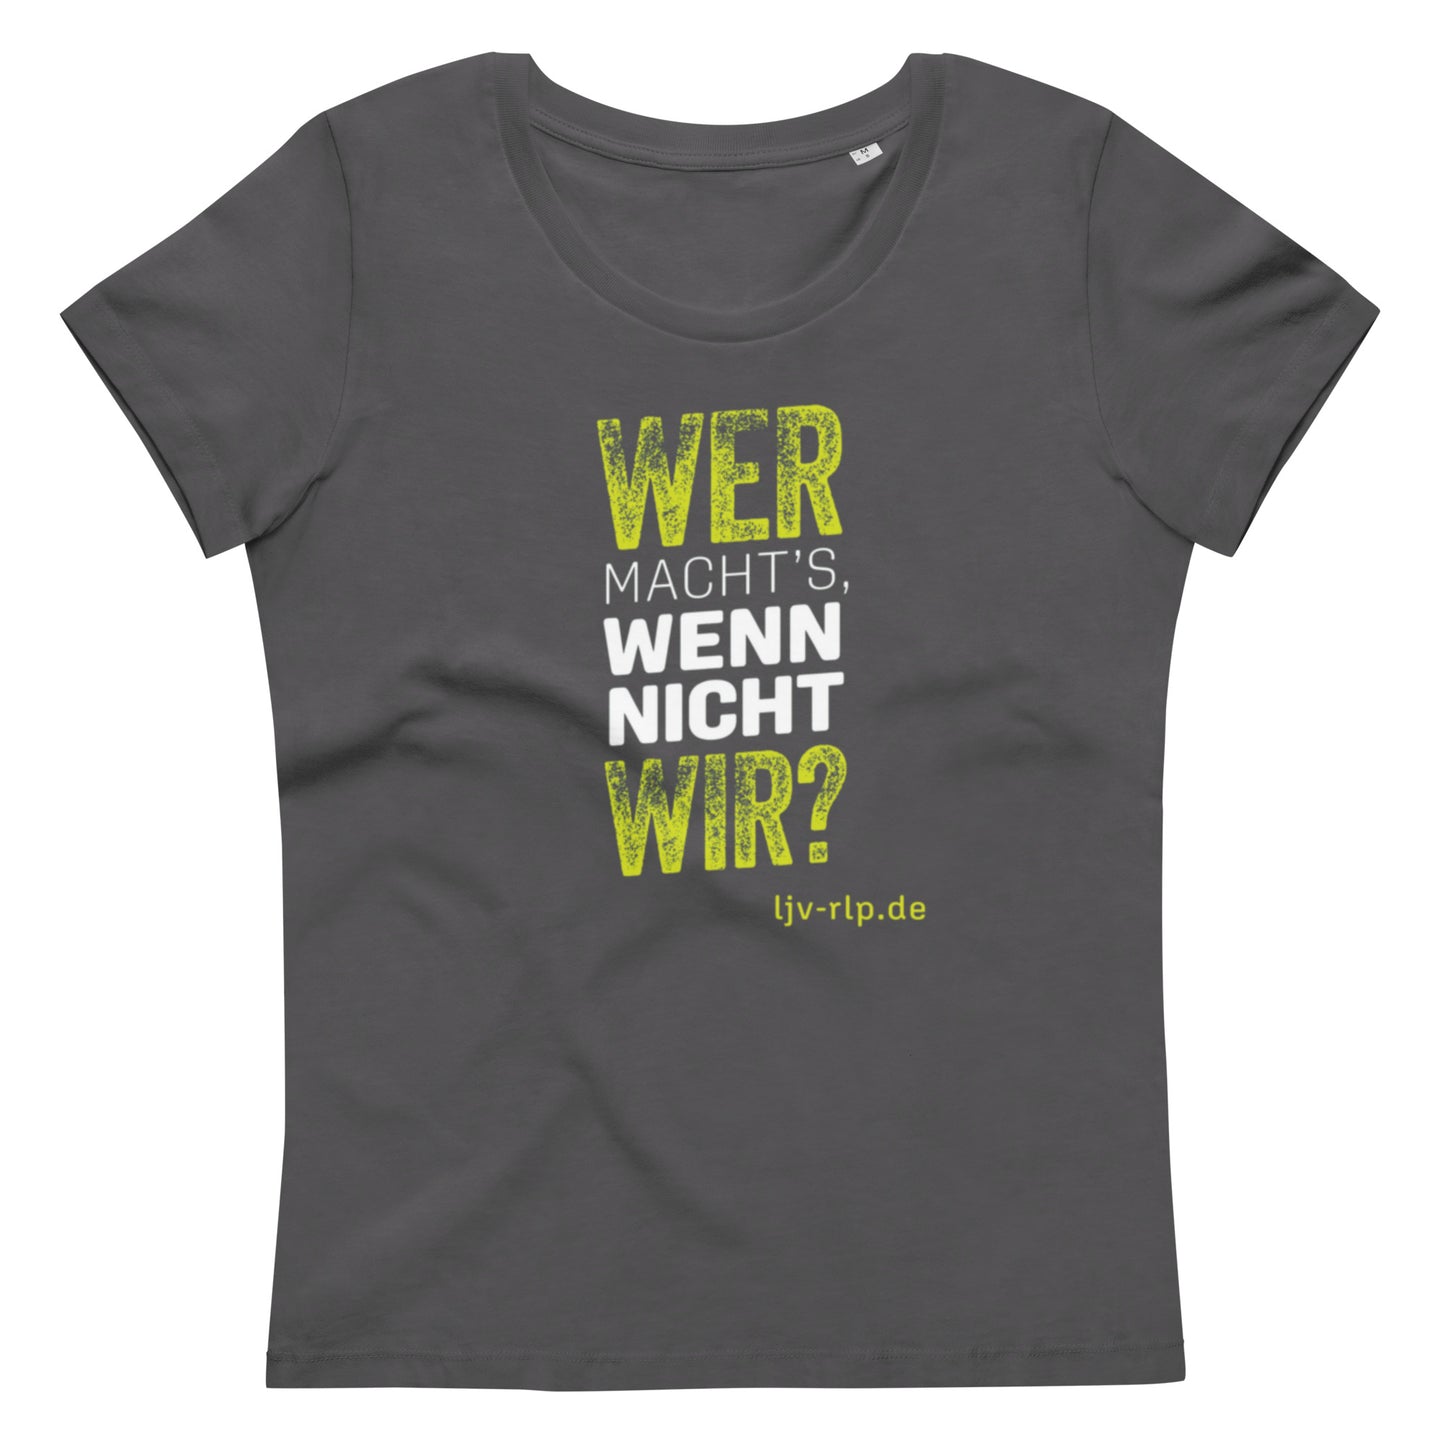 T-Shirt "Wer macht's wenn nicht wir?" (Slimfit)